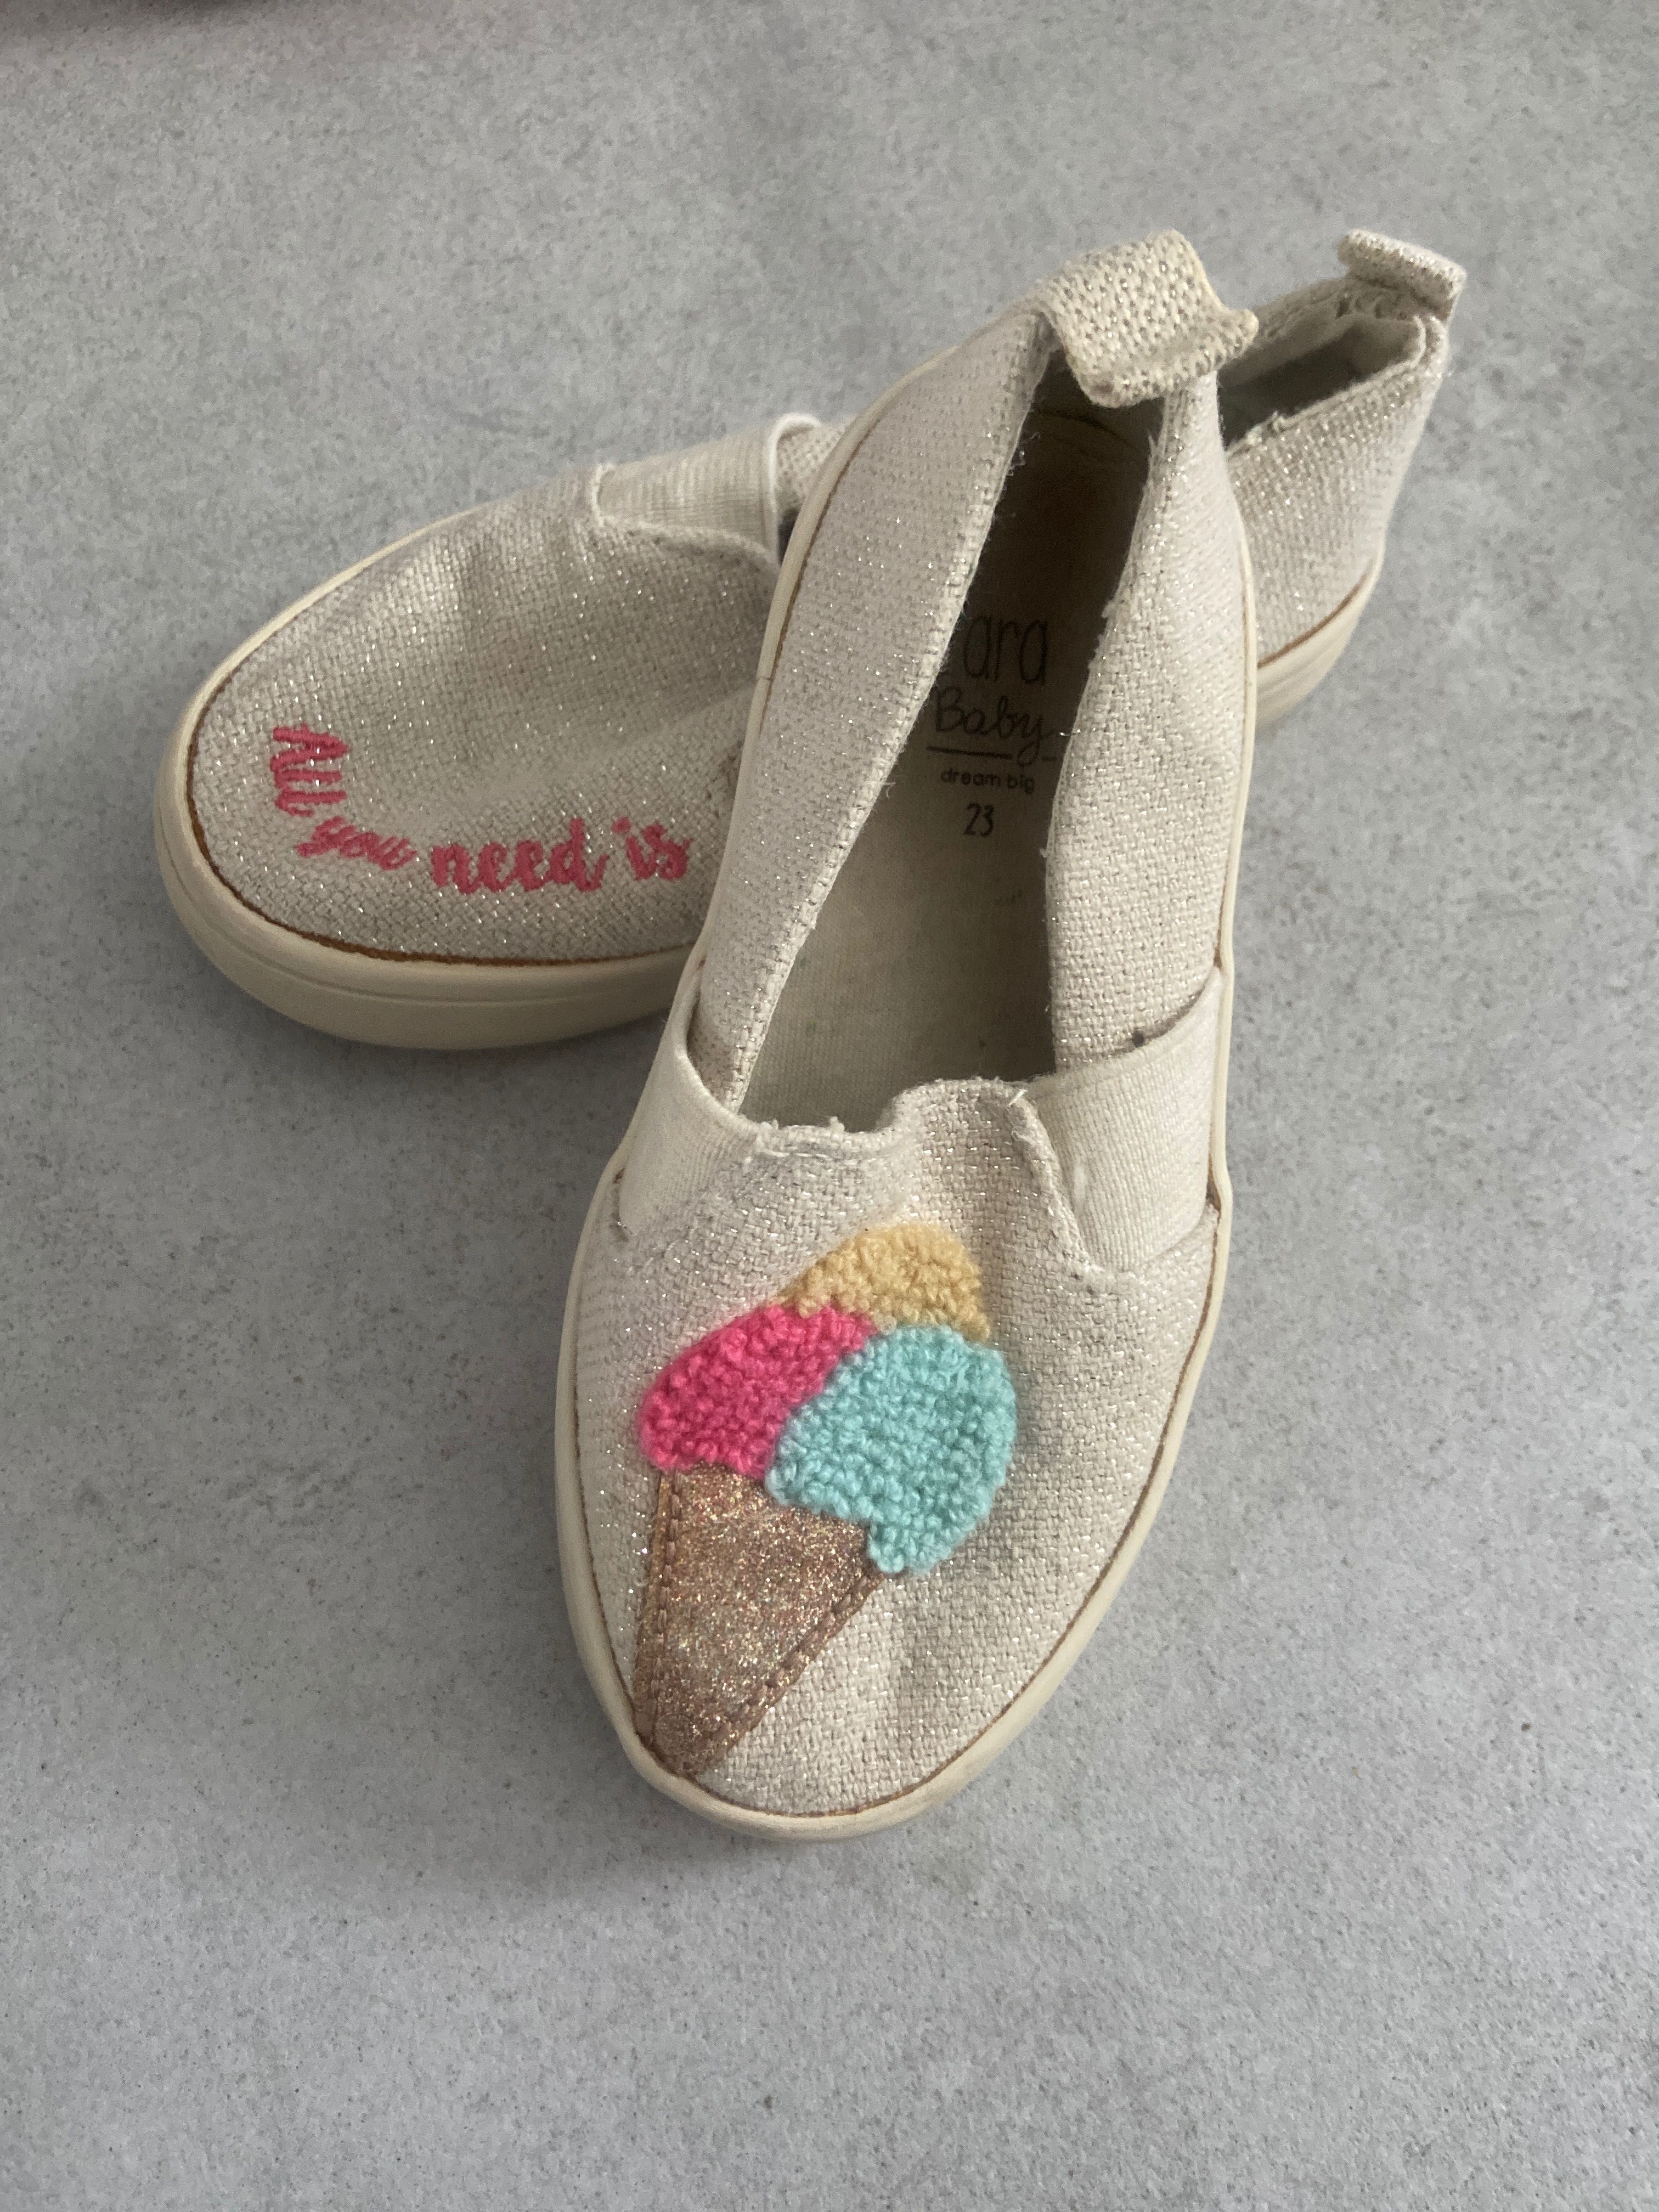 Buty obuwie dziecięce Zara, Befado, Fisher-price kapcie, trampki